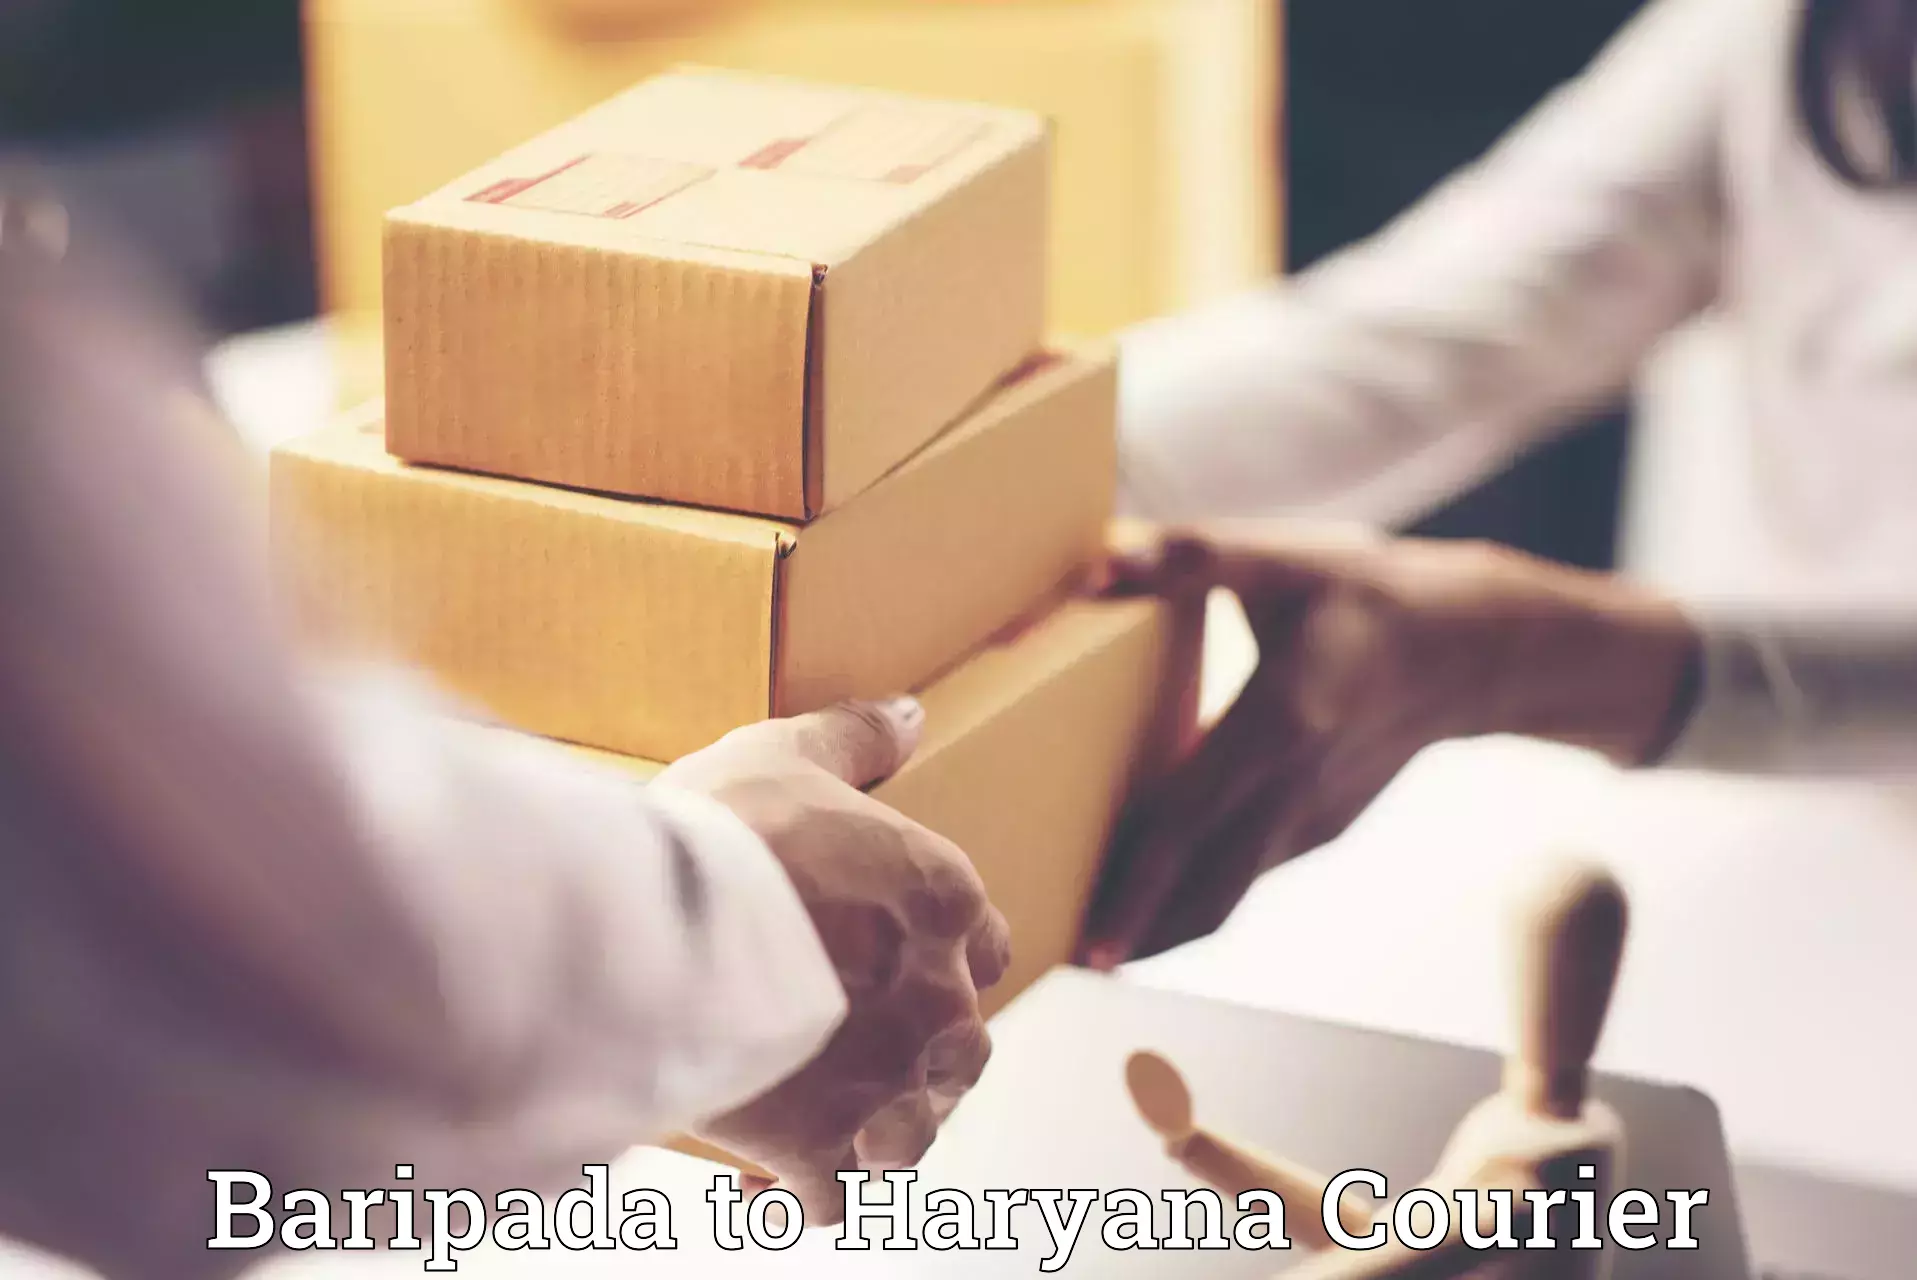 Professional furniture movers Baripada to Bhiwani